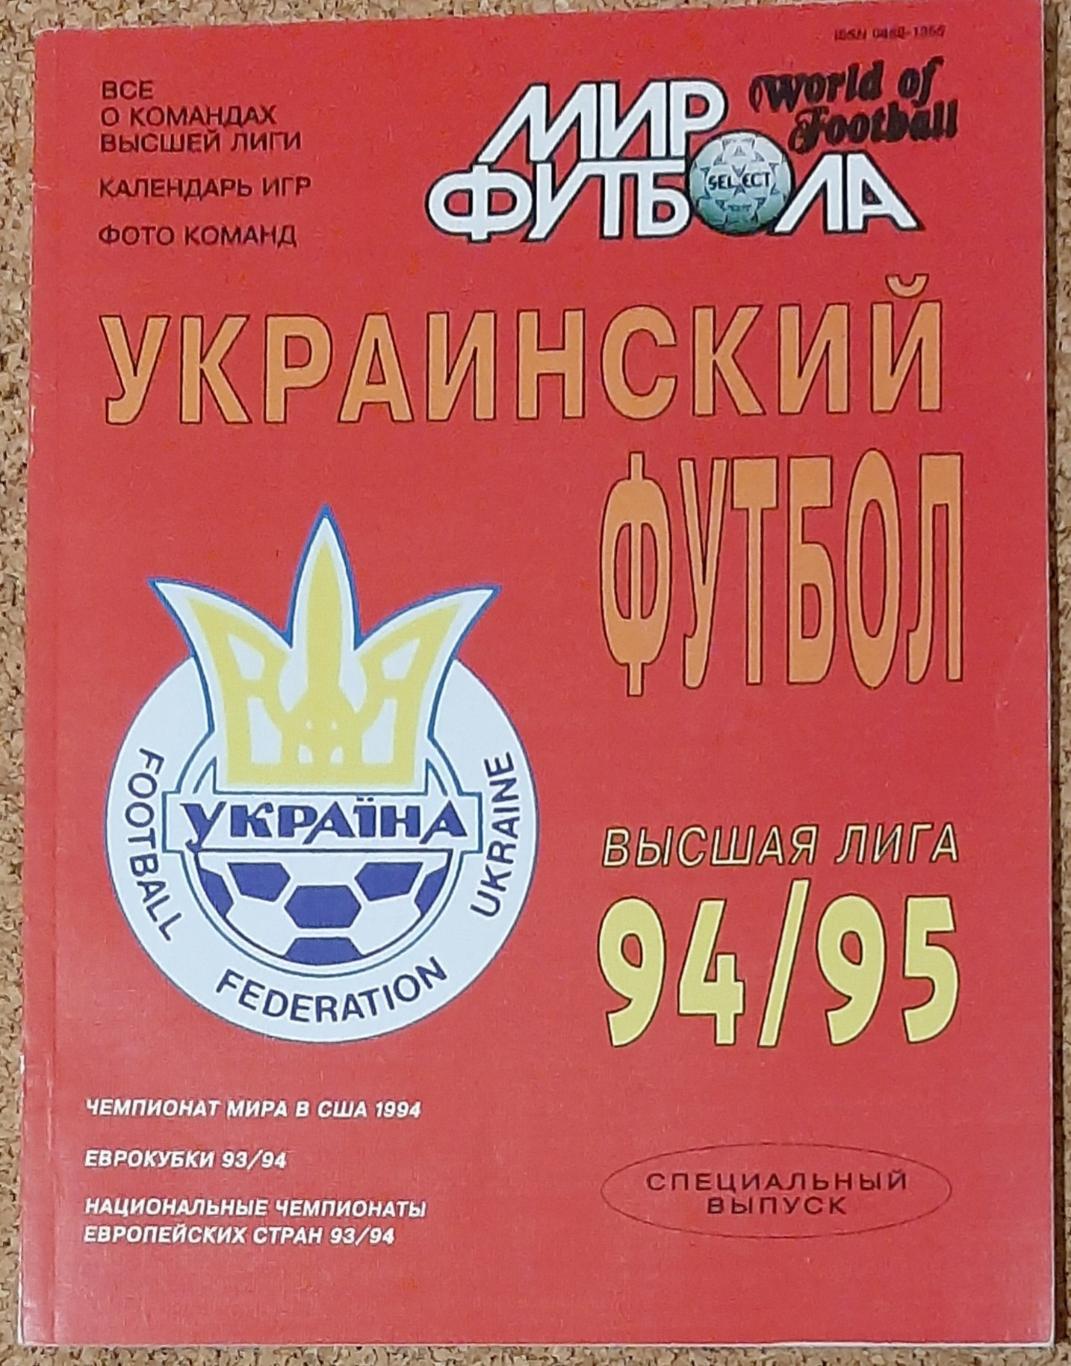 Журнал Мир футбола Український футбол 1994/95 Постери всіх команд вищої ліги